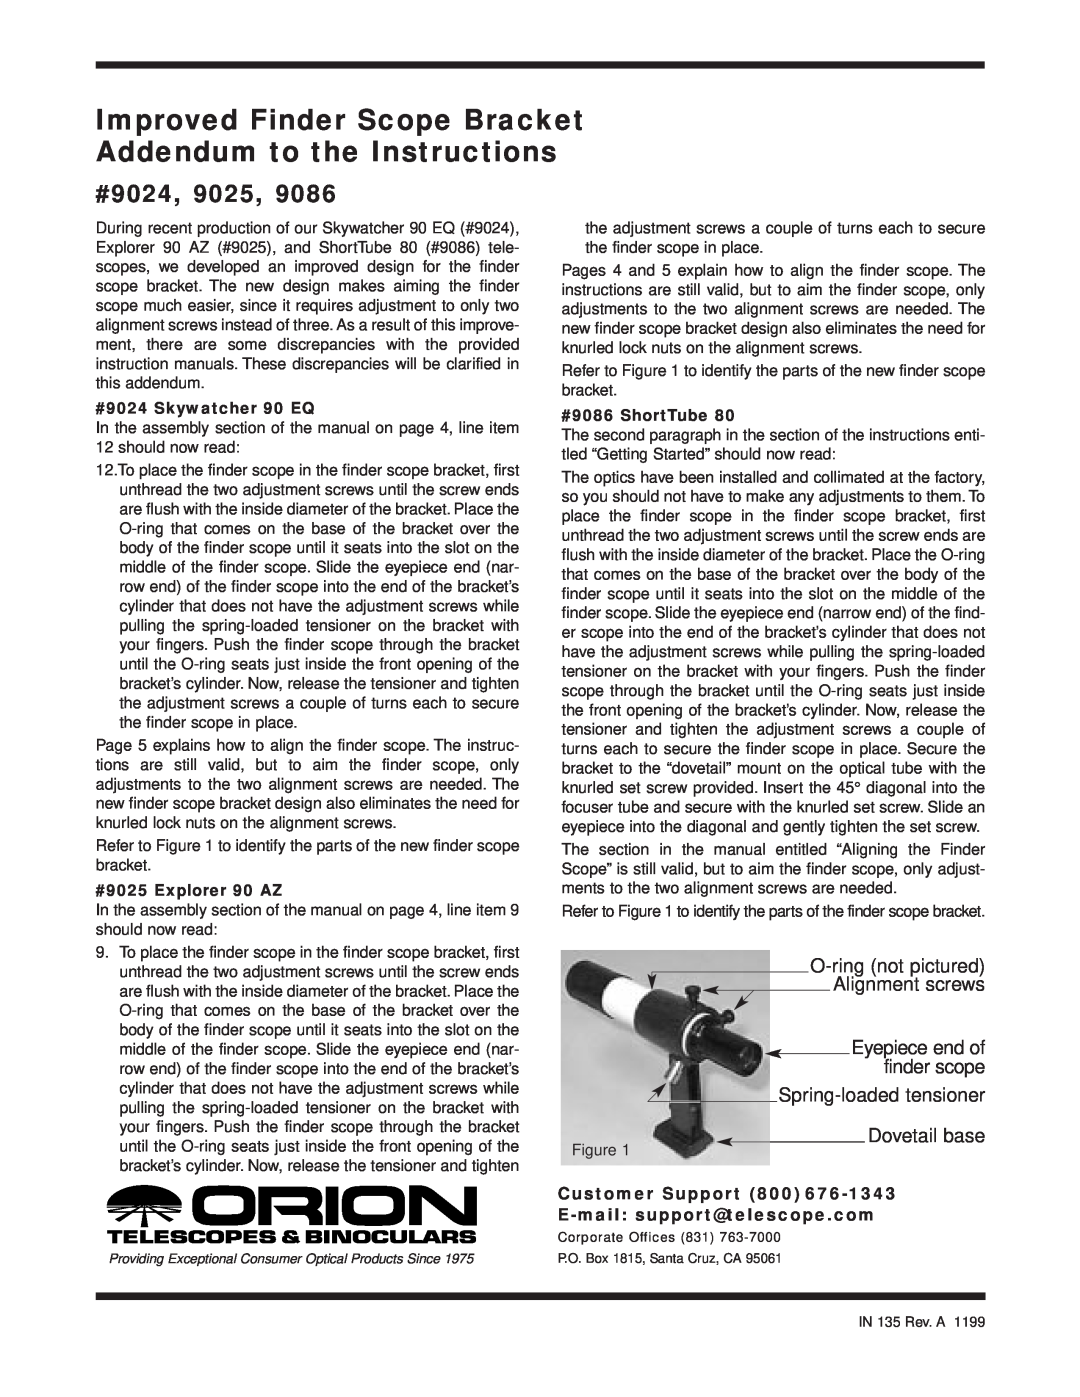 Orion 9086, 9025 Improved Finder Scope Bracket Addendum to the Instructions, #9024, Eyepiece end of finder scope 